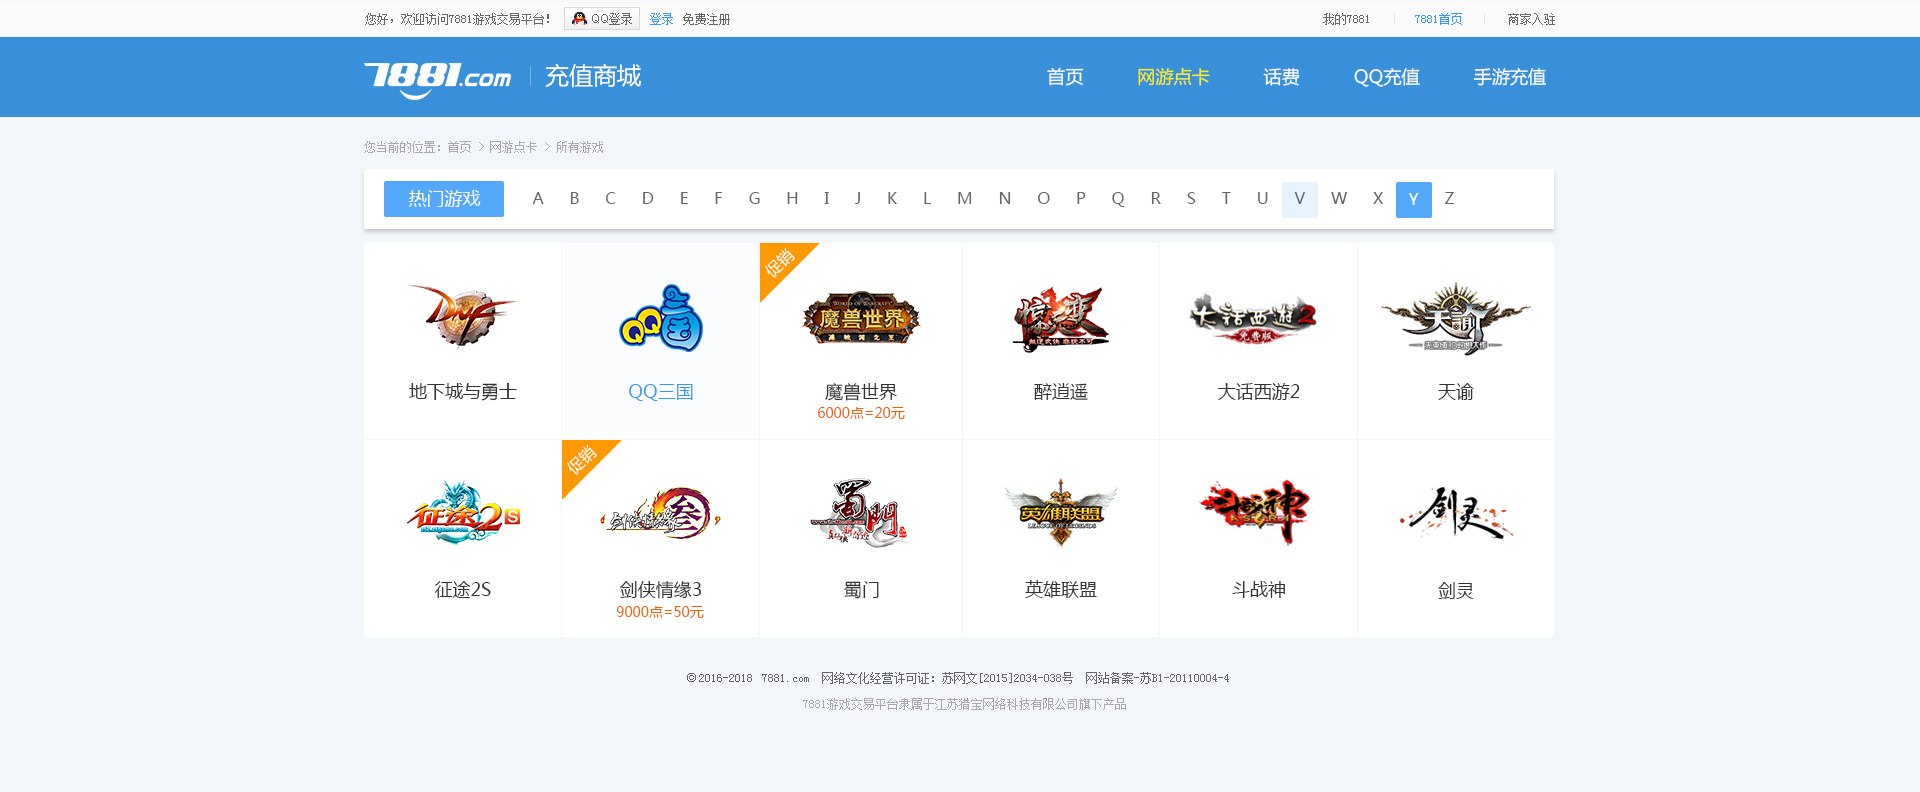 【已上线】网页设计-游戏平台网站www.7881.